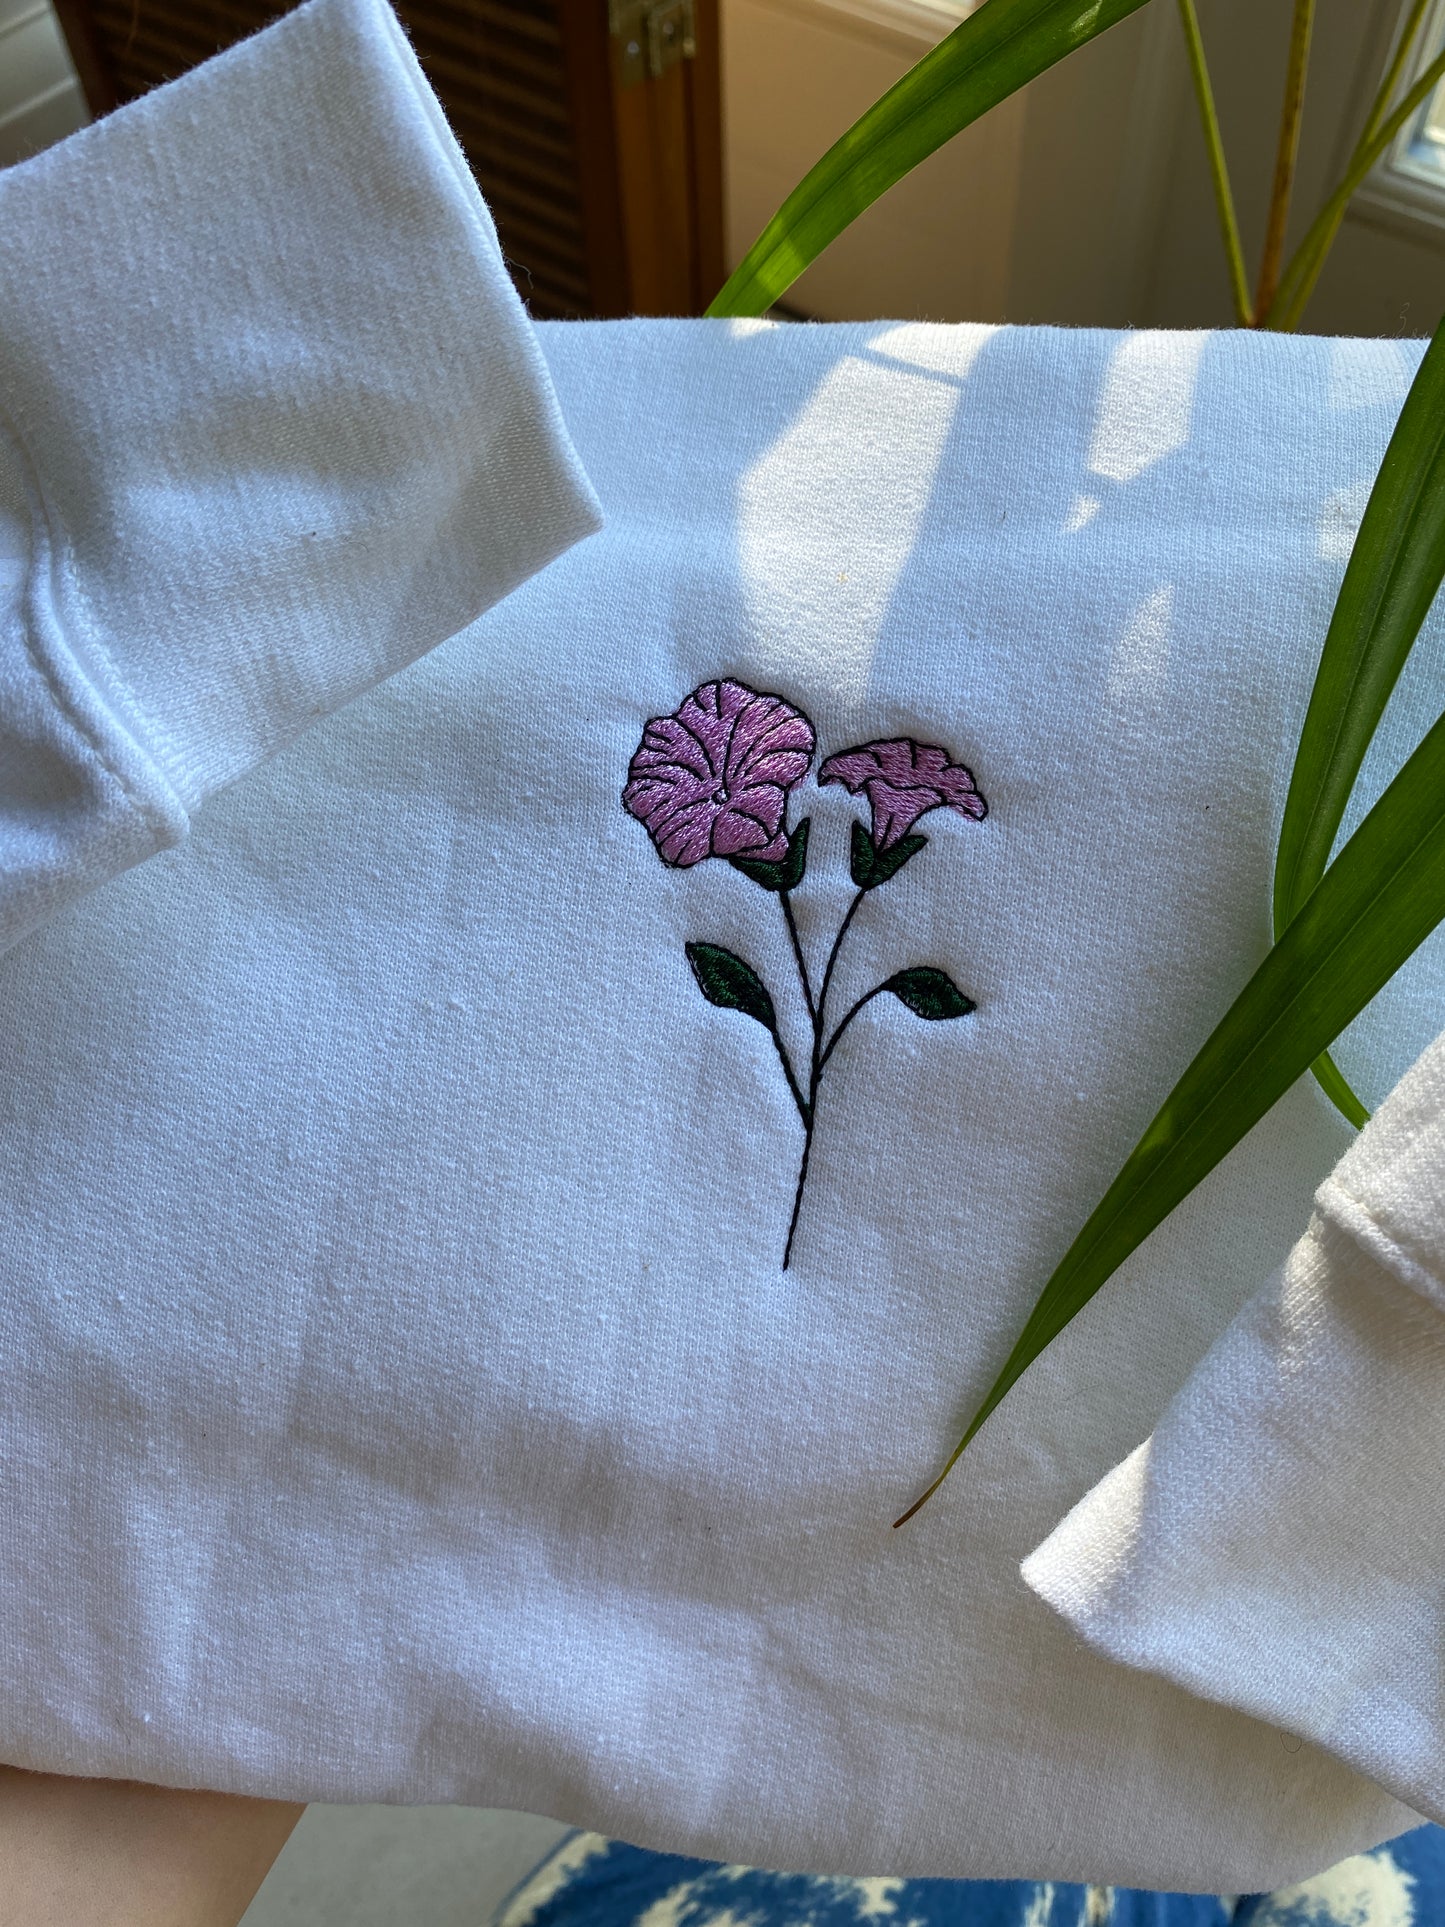 Birth flower Embroidered sweatshirt